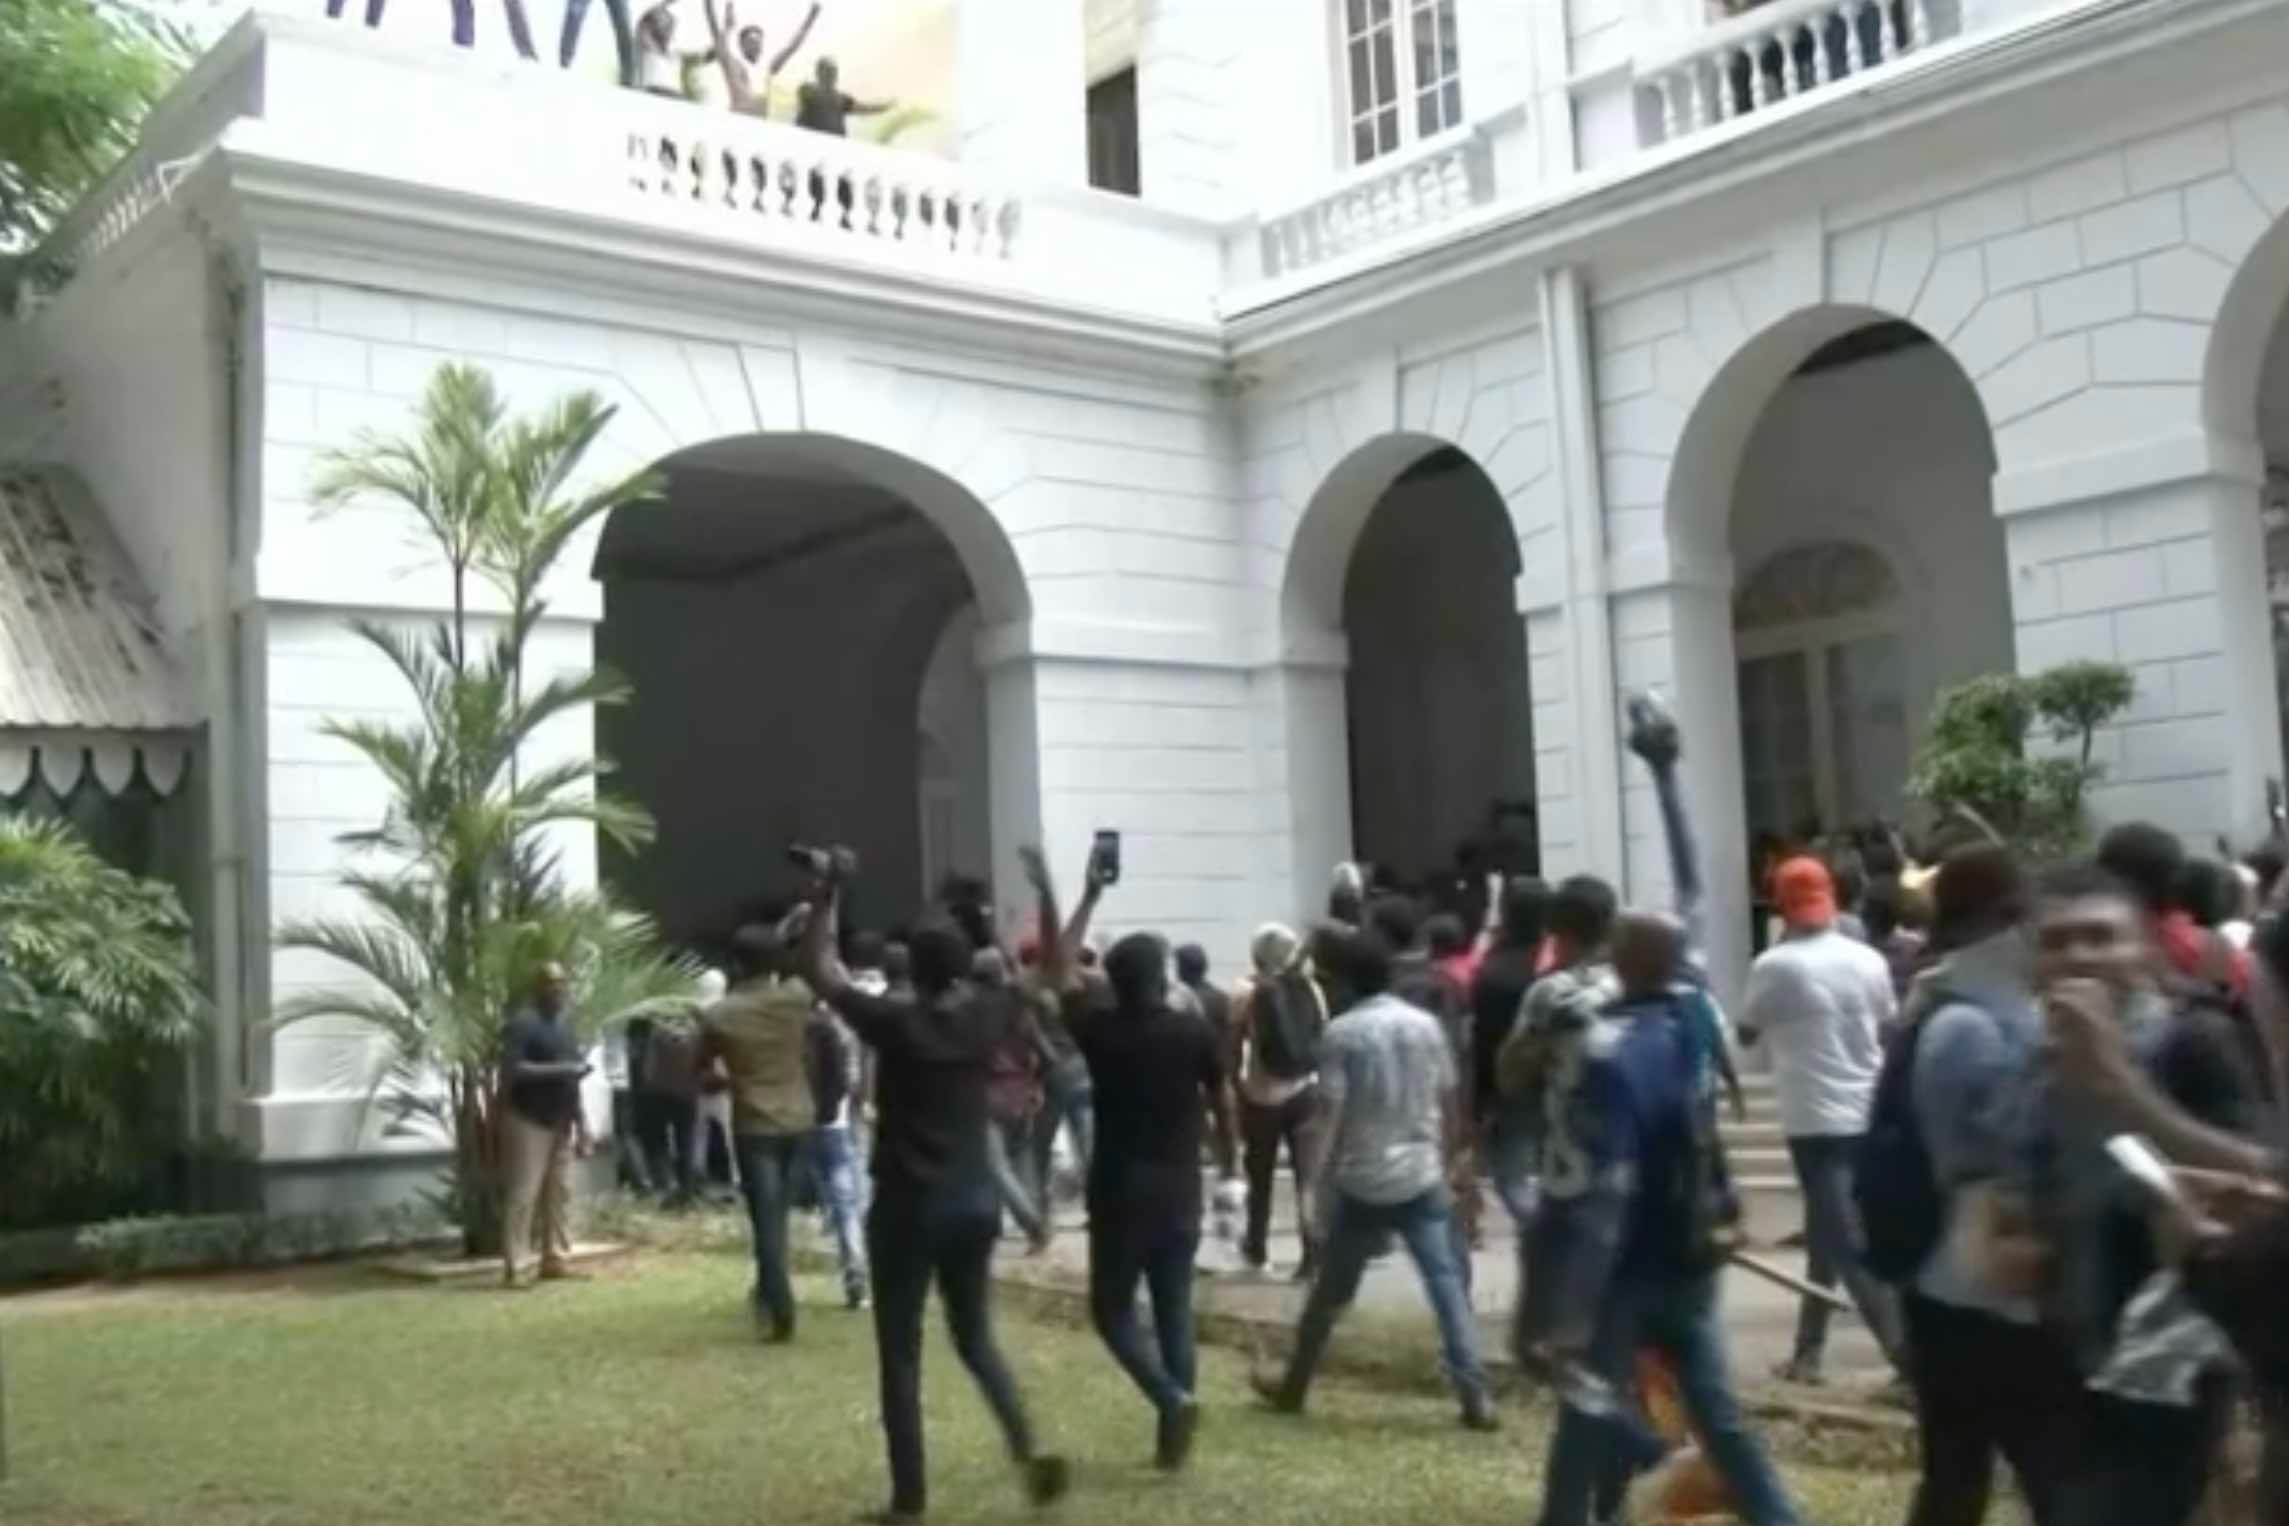 國家破產 示威者衝入官邸 斯里蘭卡總統大逃亡願下台